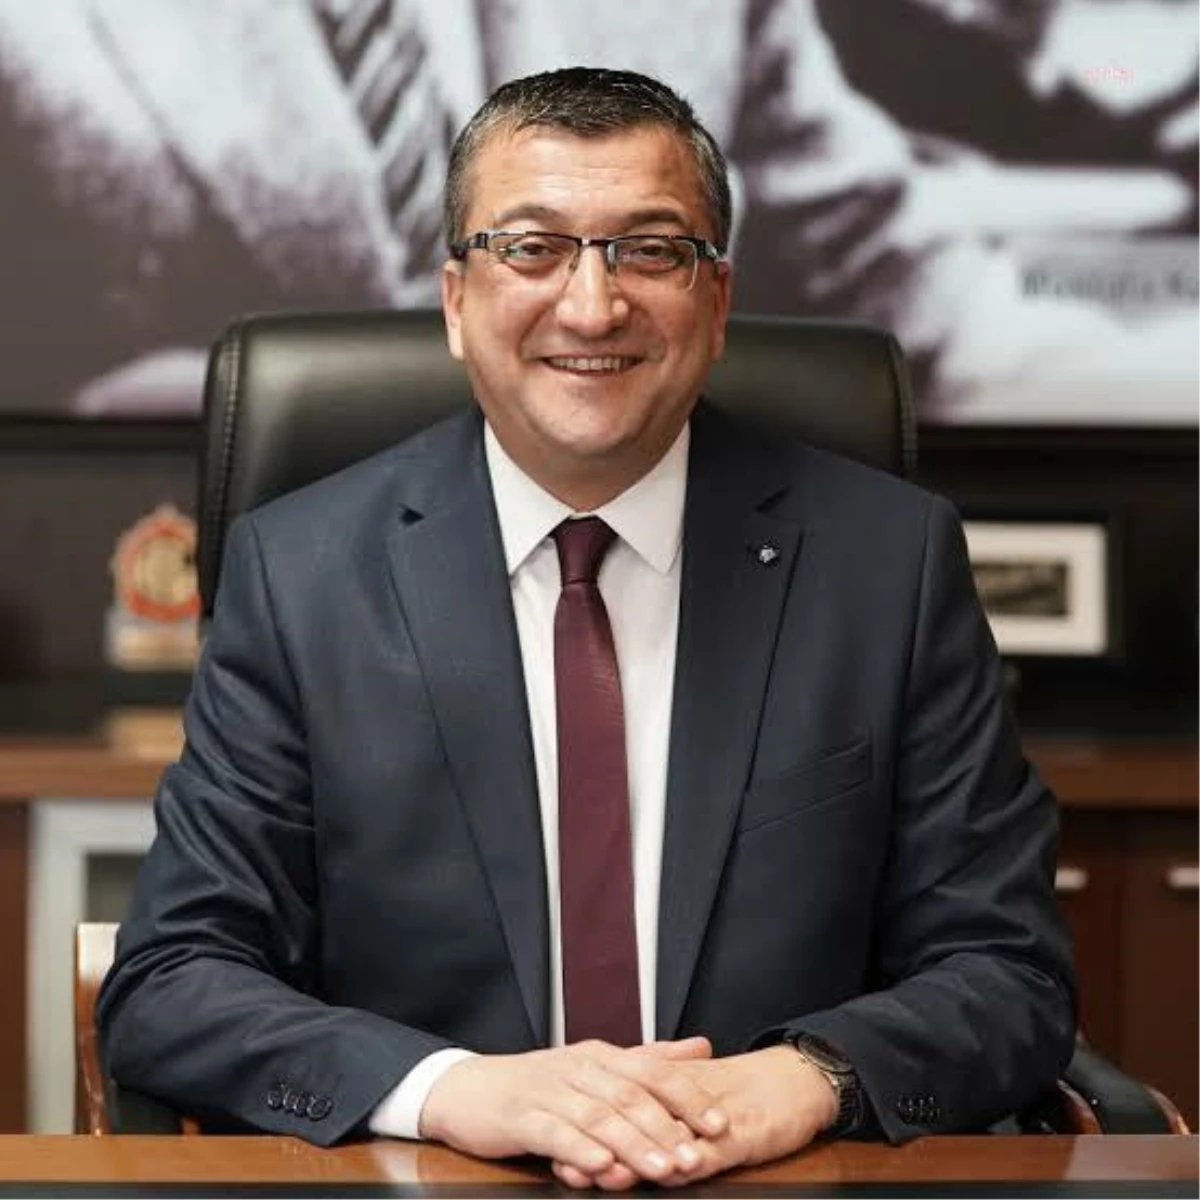 Çanakkale Çan Belediye Başkanı Bülent Öz, Gözaltına Alındı… CHP\'li Erkek: "Temelsiz, Yersiz, Haksız ve Hukuksuz"Lent Öz Gözaltına Alındı